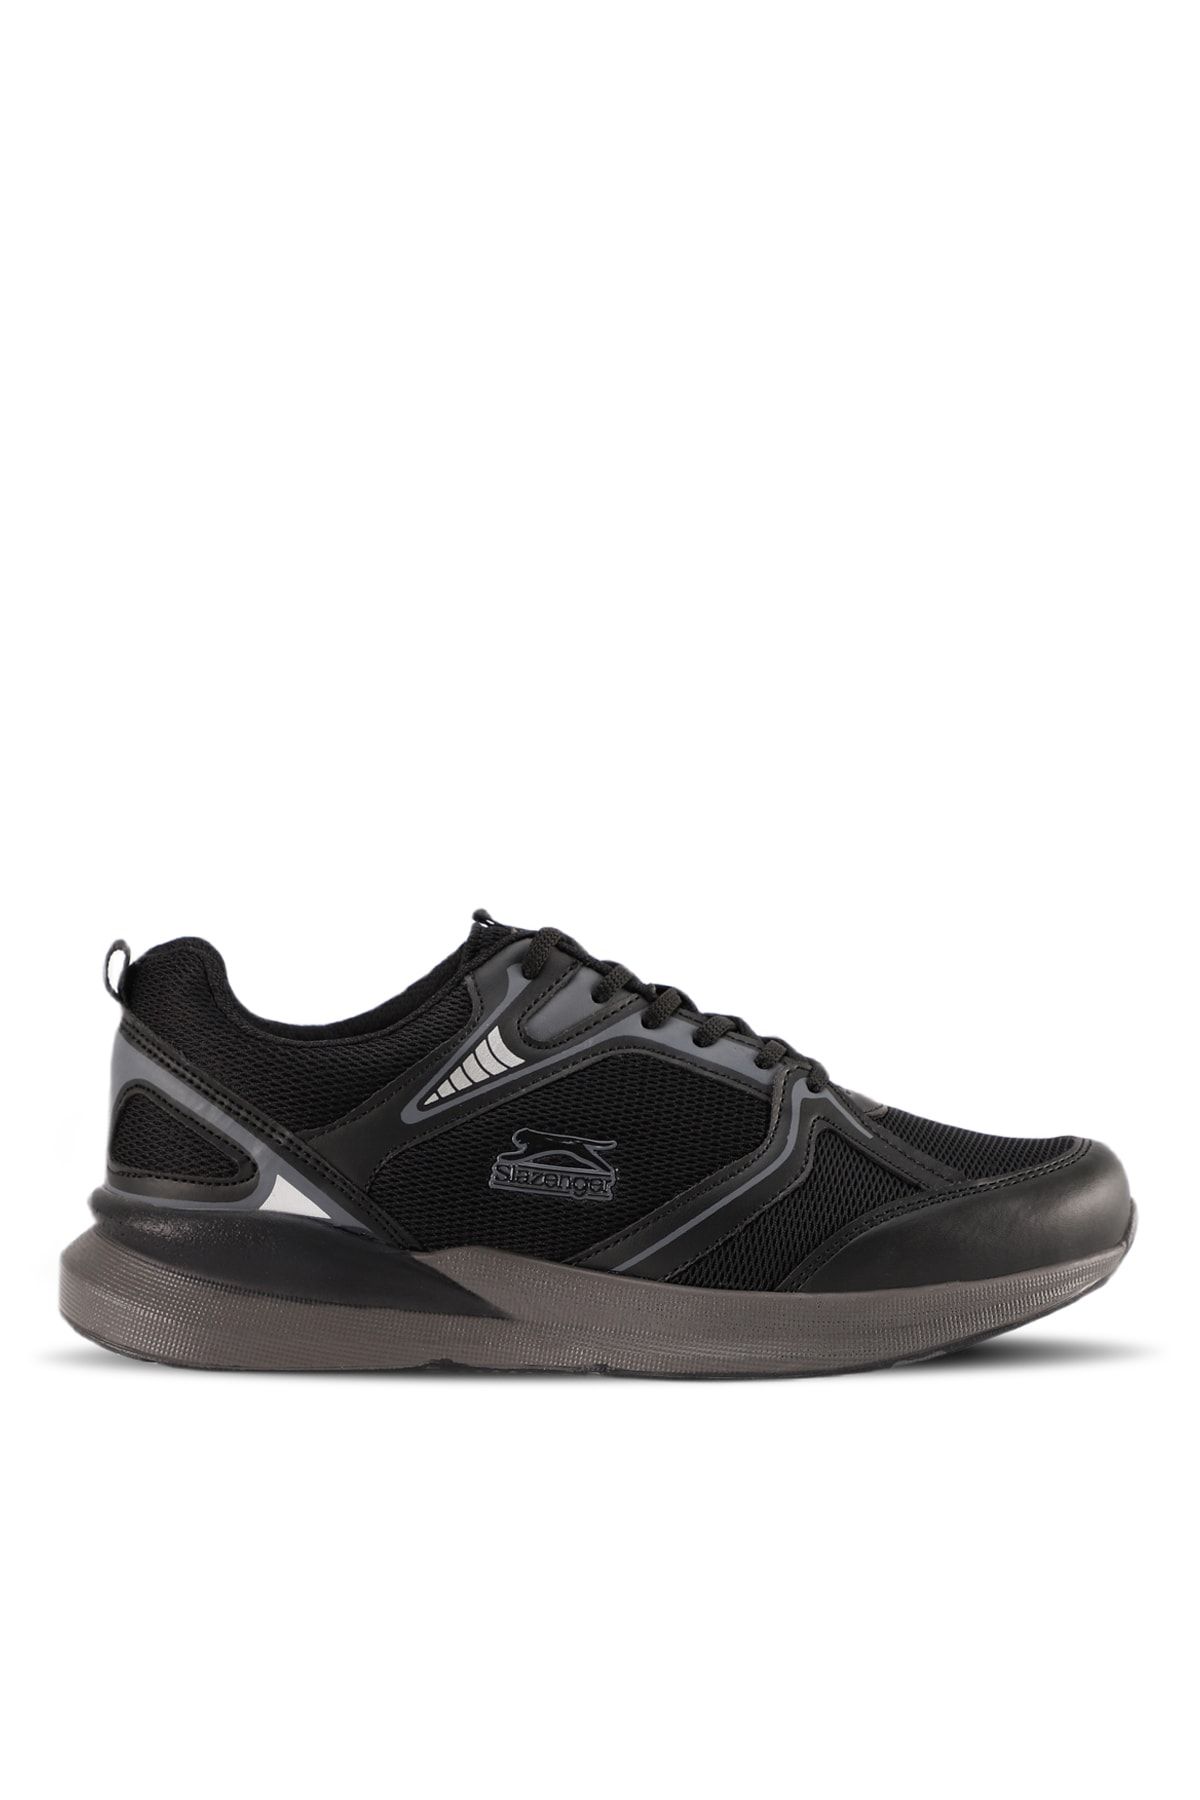 Slazenger Melba I Sneaker Erkek Ayakkabı Siyah / Siyah